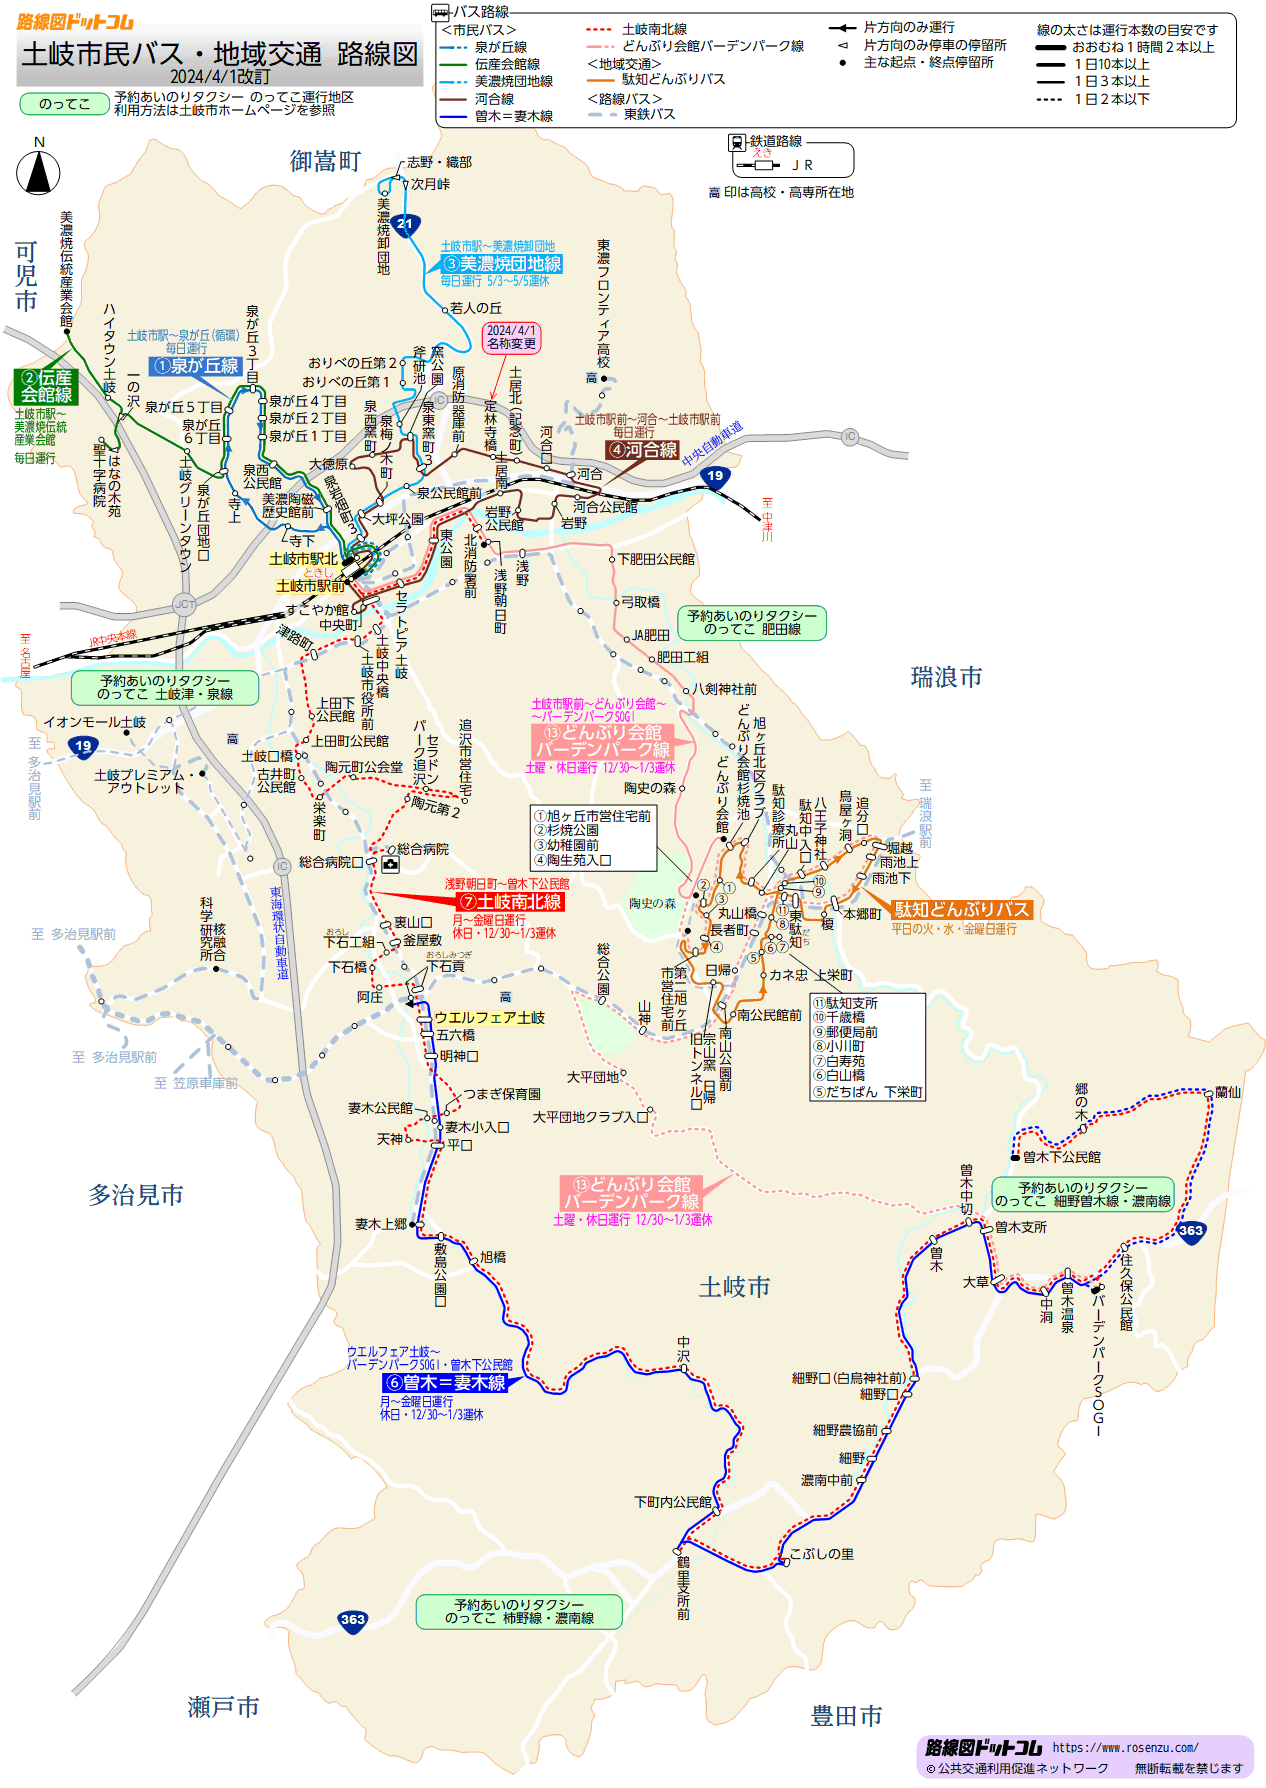 土岐市民バス路線図